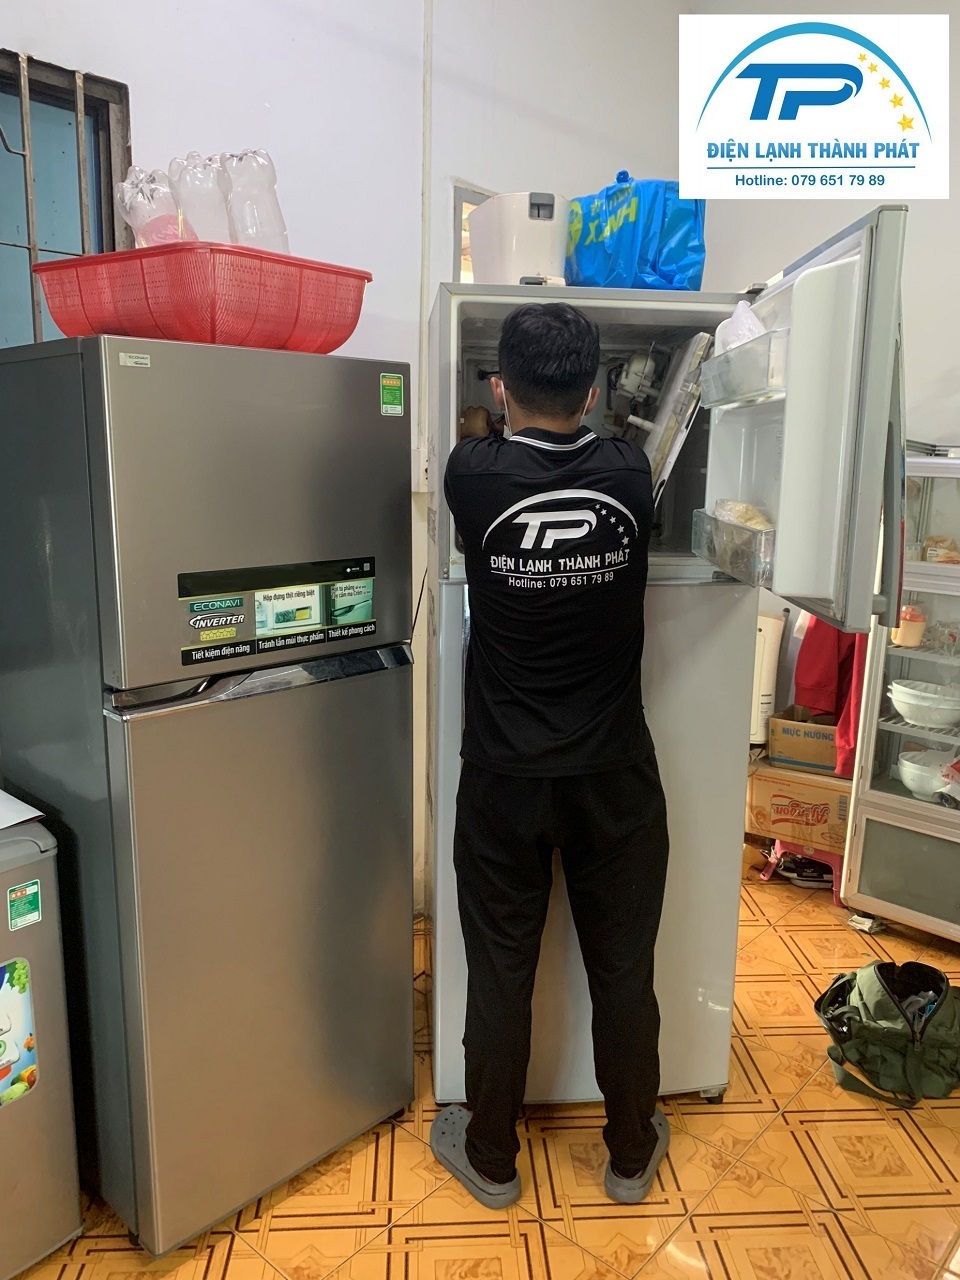 Khi sửa chữa tủ lạnh tại Thành Phát, Quý khách sẽ nhận được nhiều ưu đãi hấp dẫn.